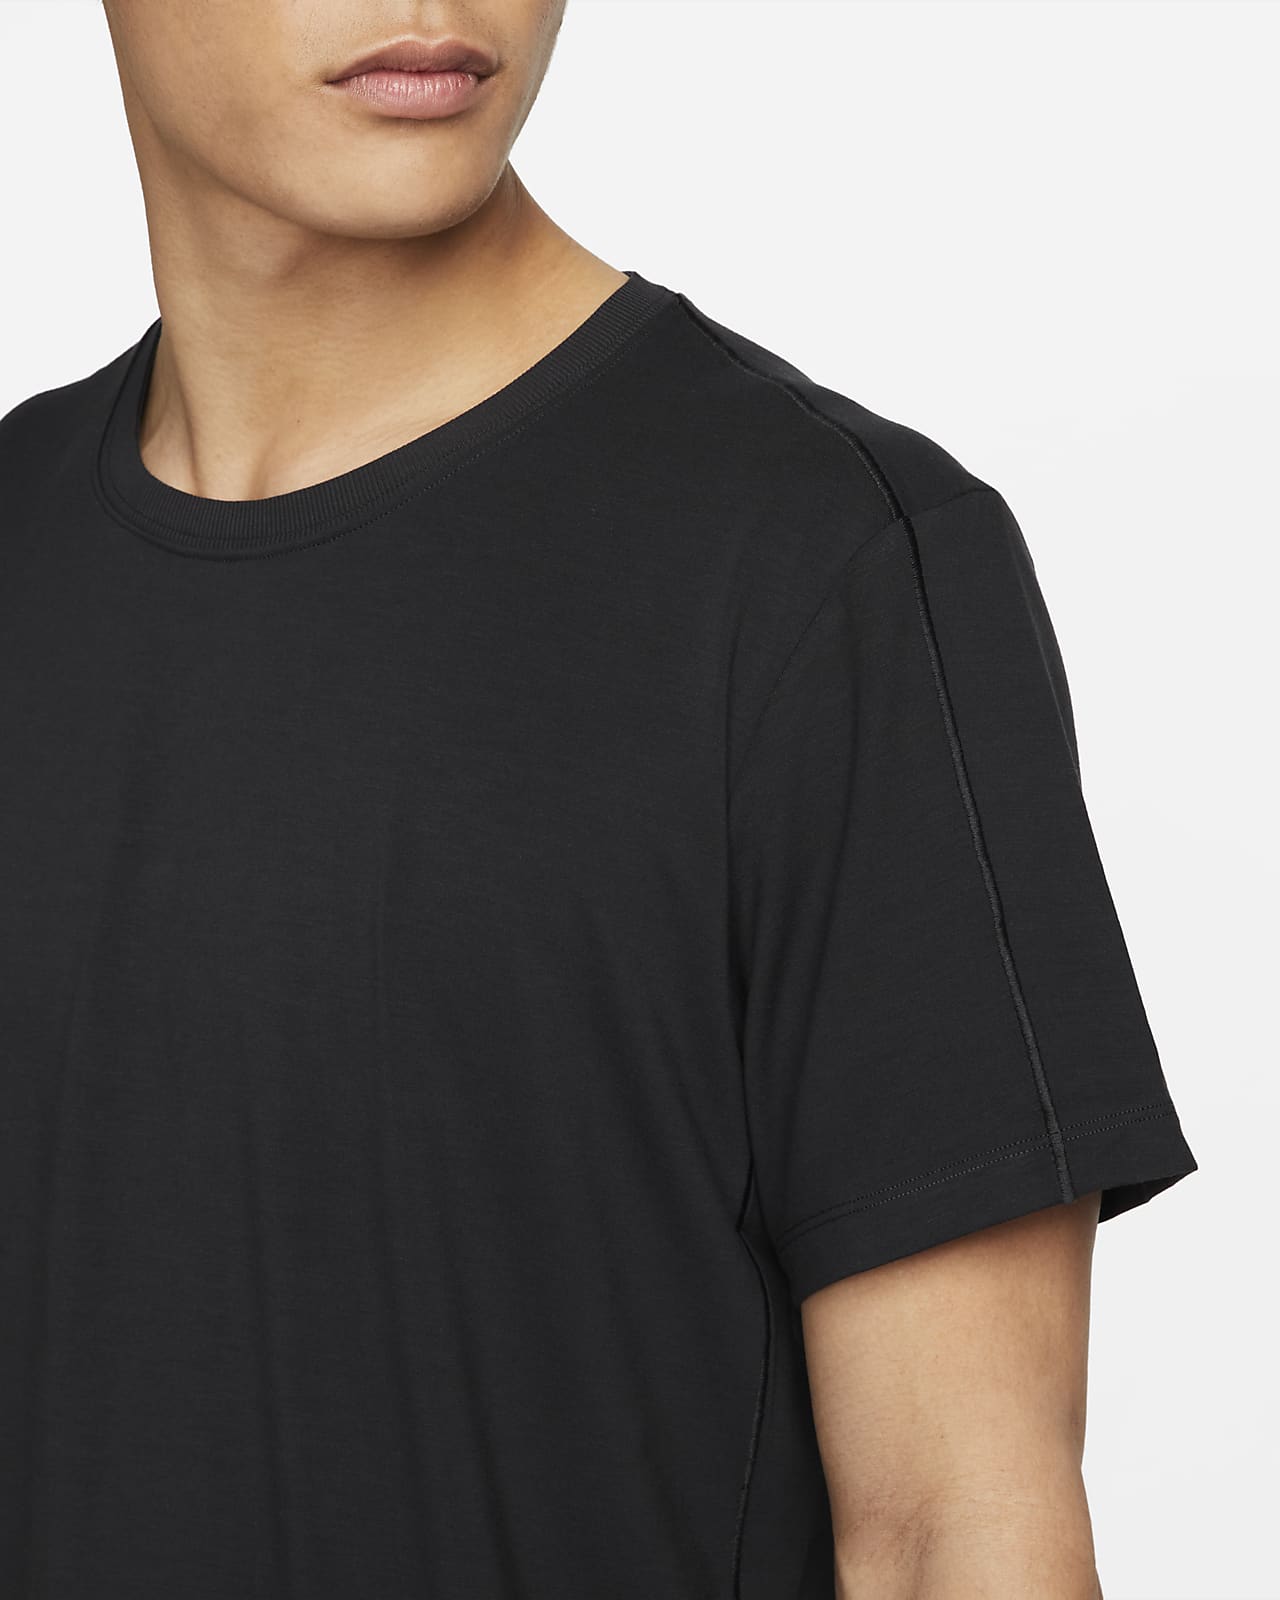 Nike Yoga t-shirt in black